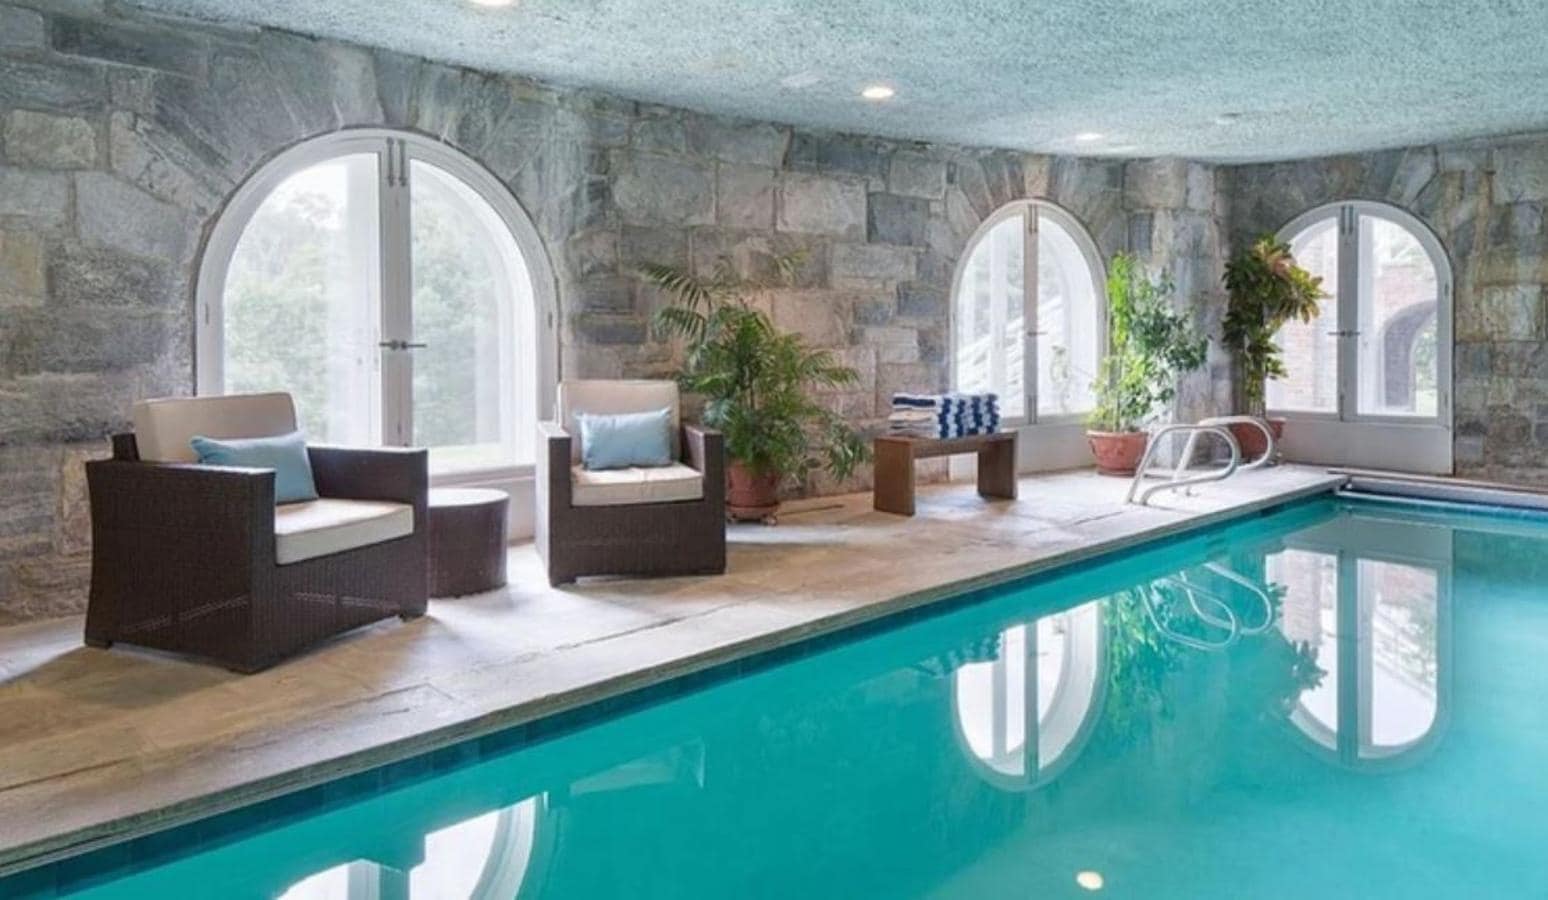 Piscina climatizada. Los baños no se reservan únicamente para los meses de calor, en invierno la mansión tiene una piscina interor de grandes dimensiones